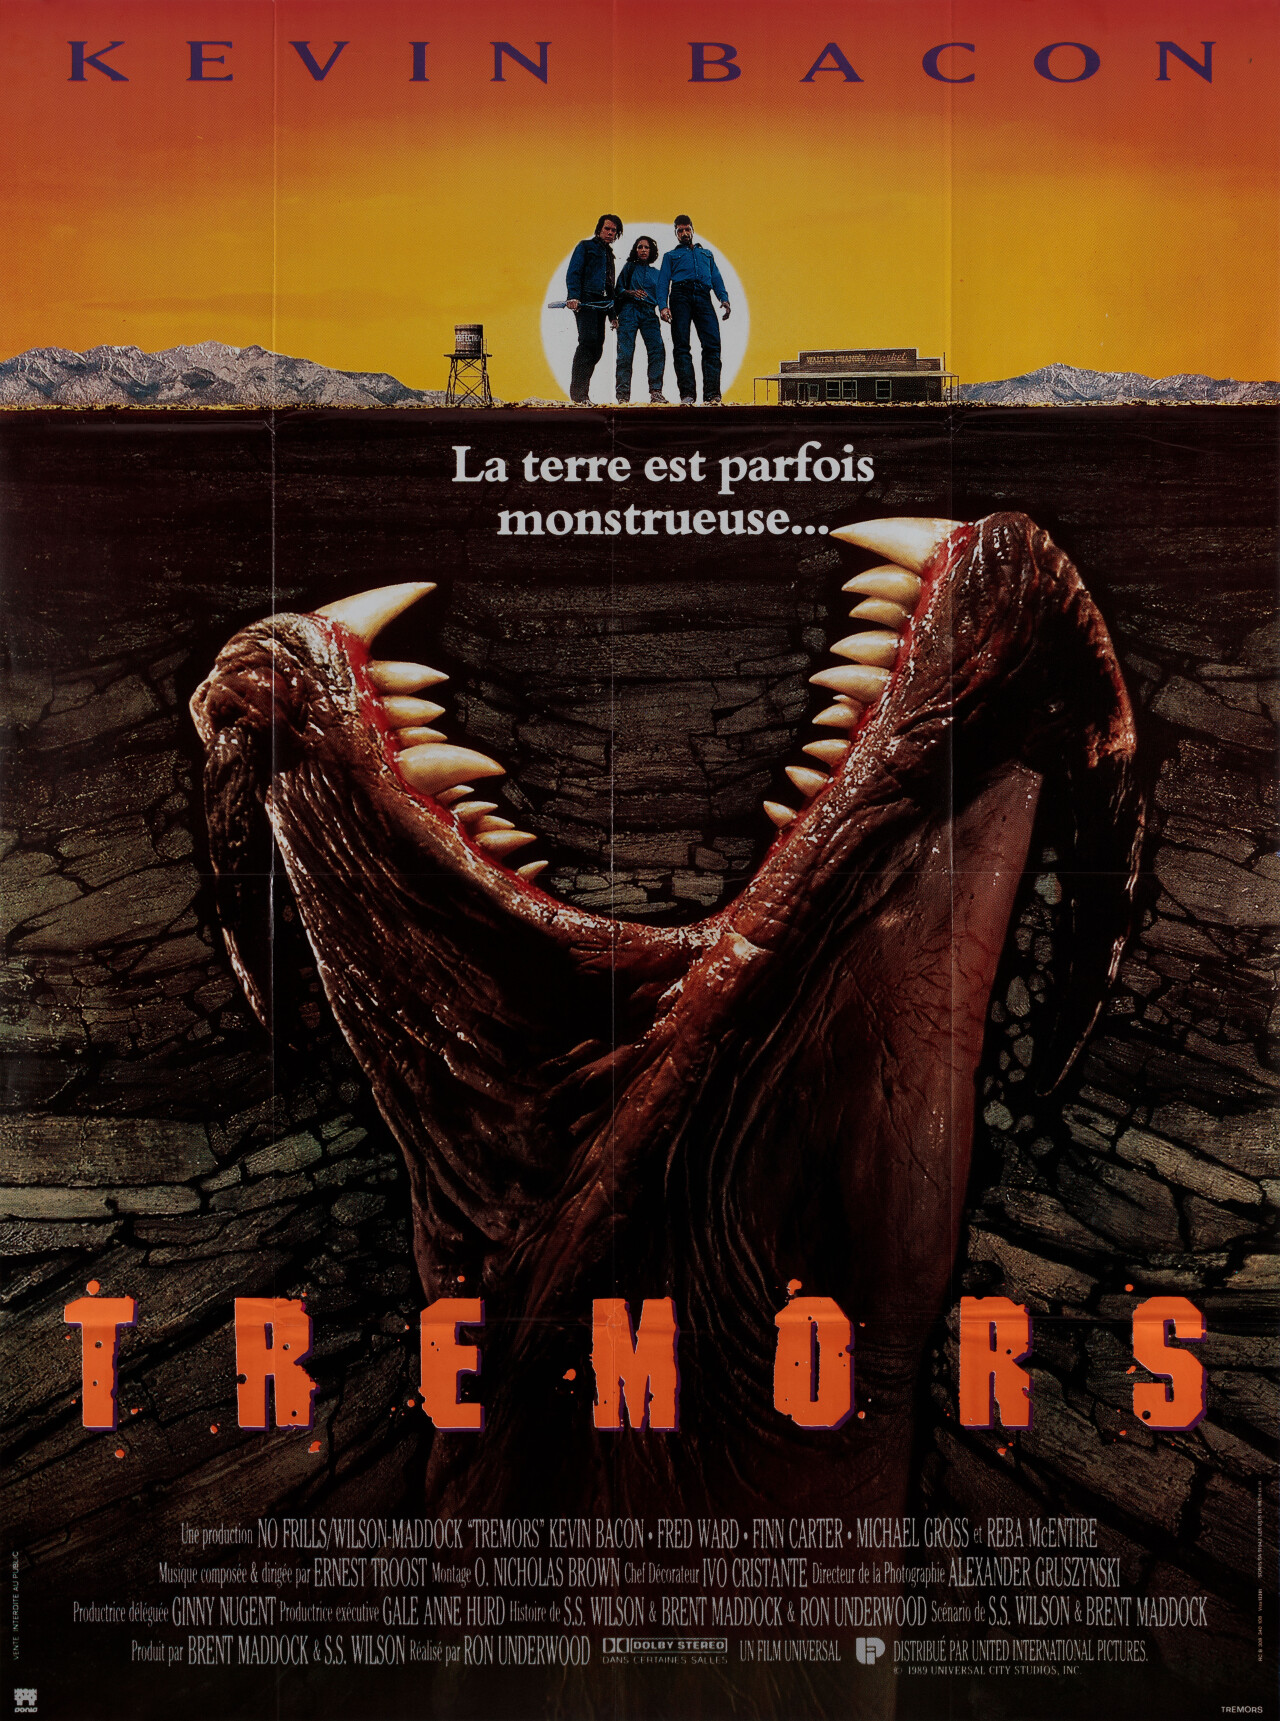 Дрожь земли (Tremors, 1990), режиссёр Рон Андервуд, французский постер к фильму (ужасы, 1990 год)